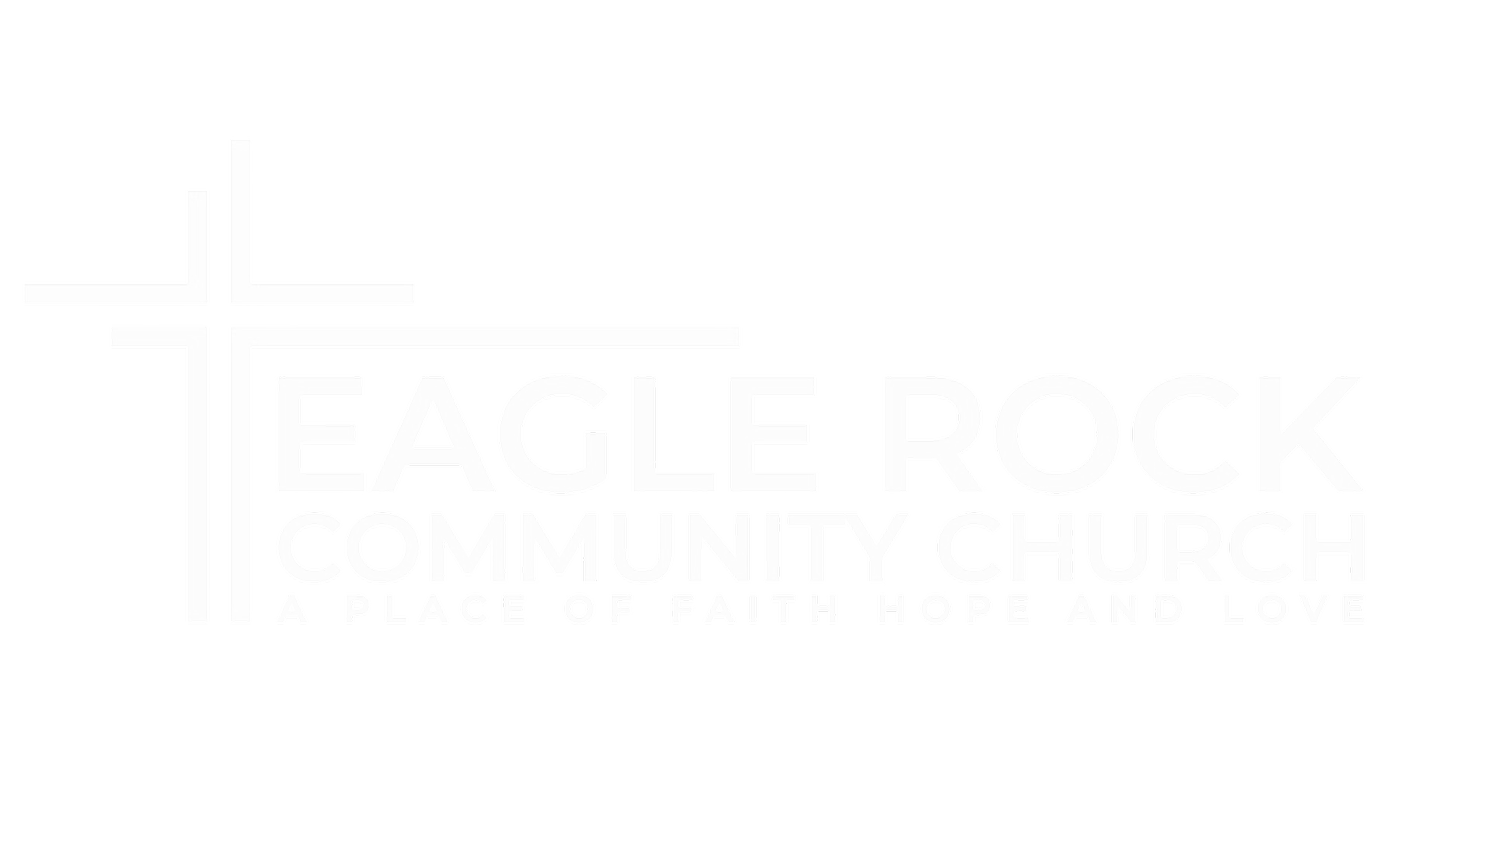 eaglerockcommunitychurch.org